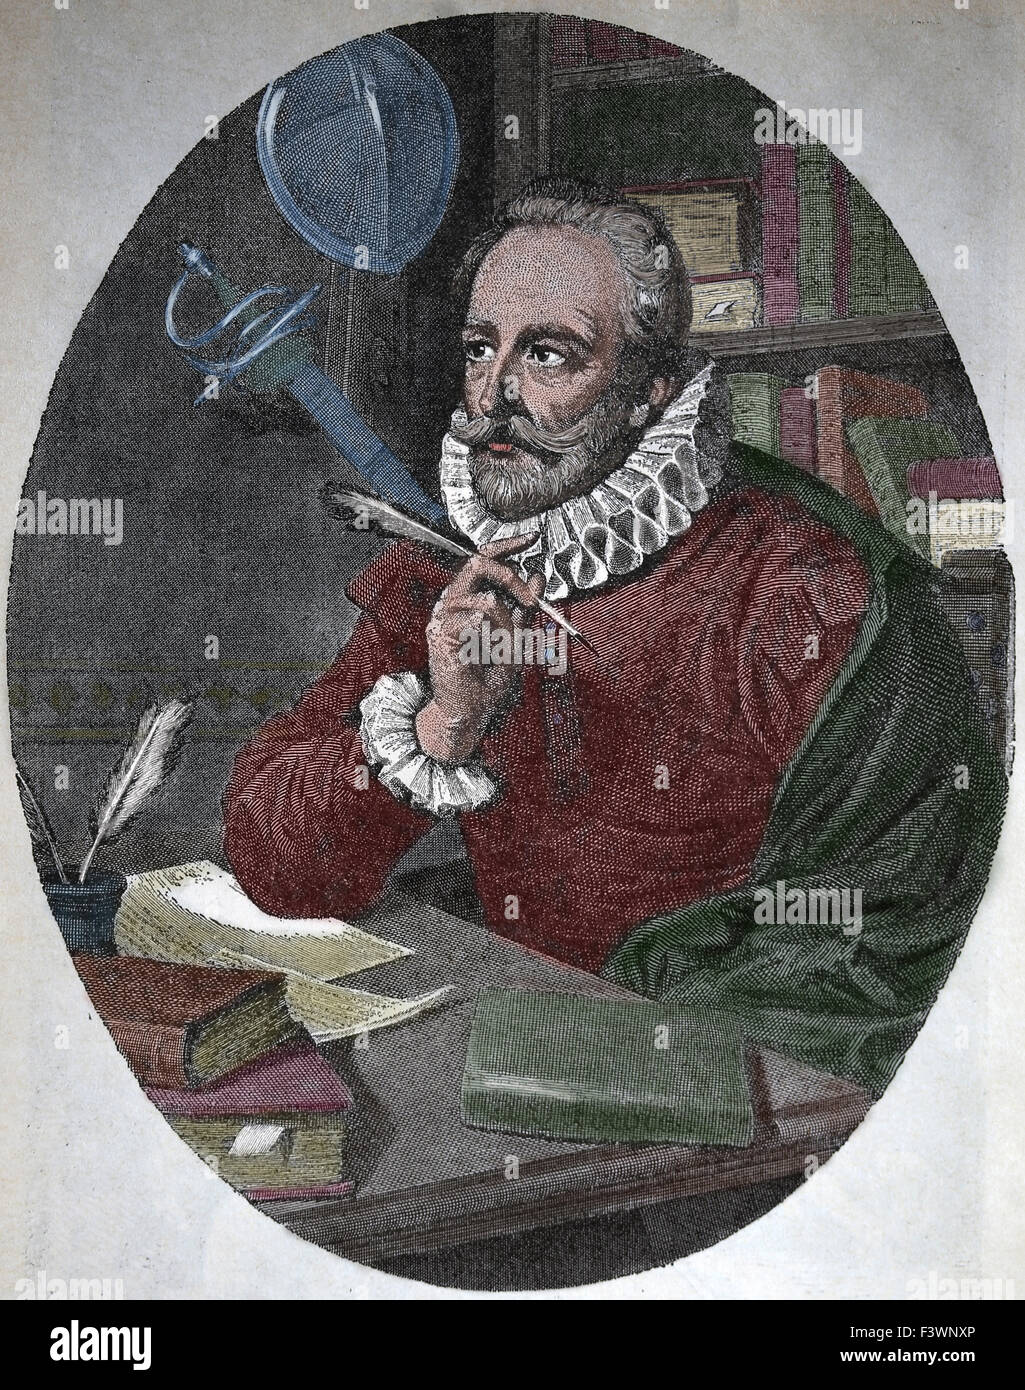 Miguel de Cervantes (1547-1616). Spanischer Schriftsteller. Gravur. des 19. Jahrhunderts. Farbe. Stockfoto